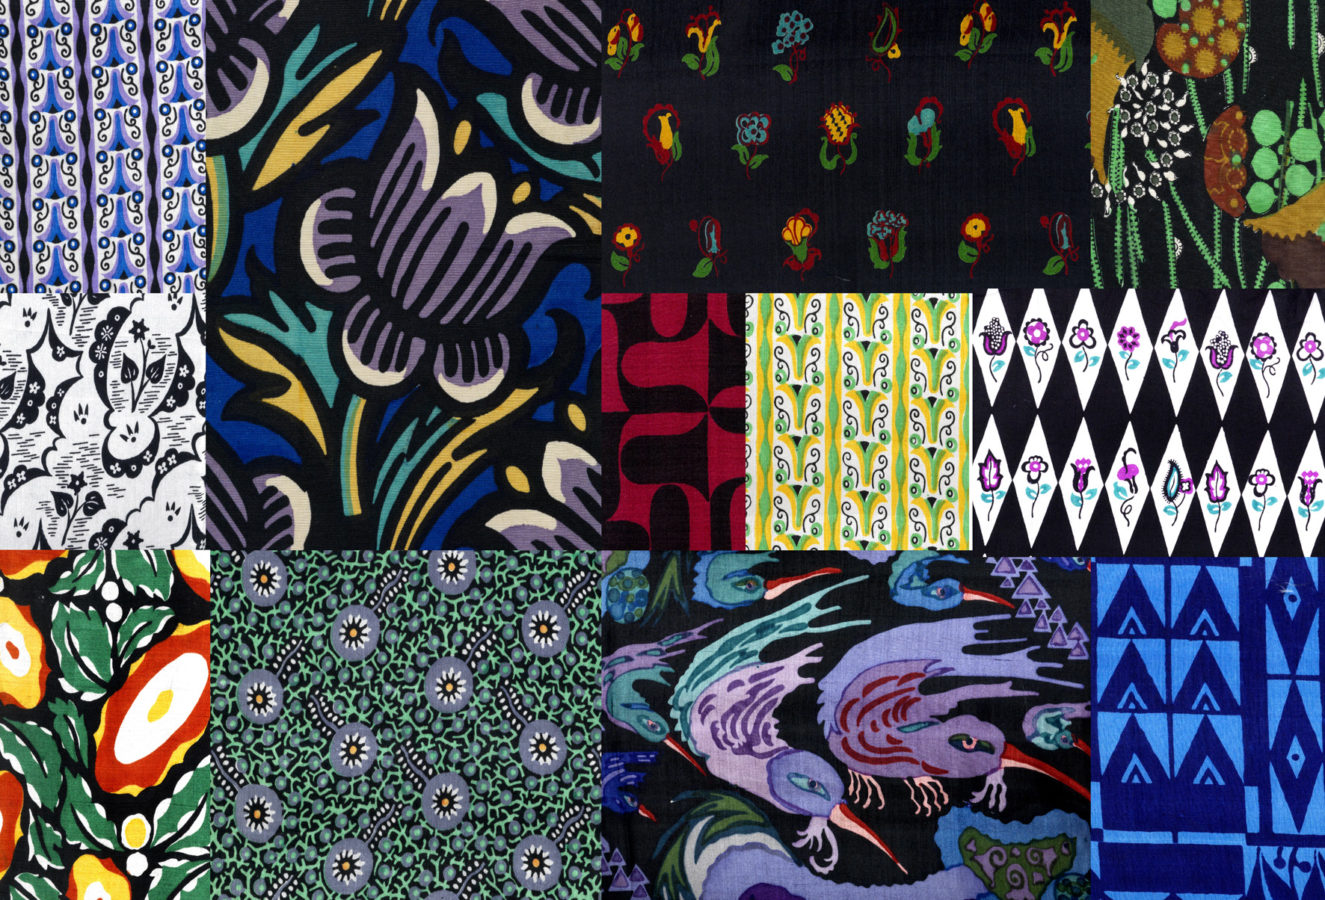 Wiener Werkstätte, A selection of 56 textile patterns of the "Wiener Werkstätte", circa 1920/25.